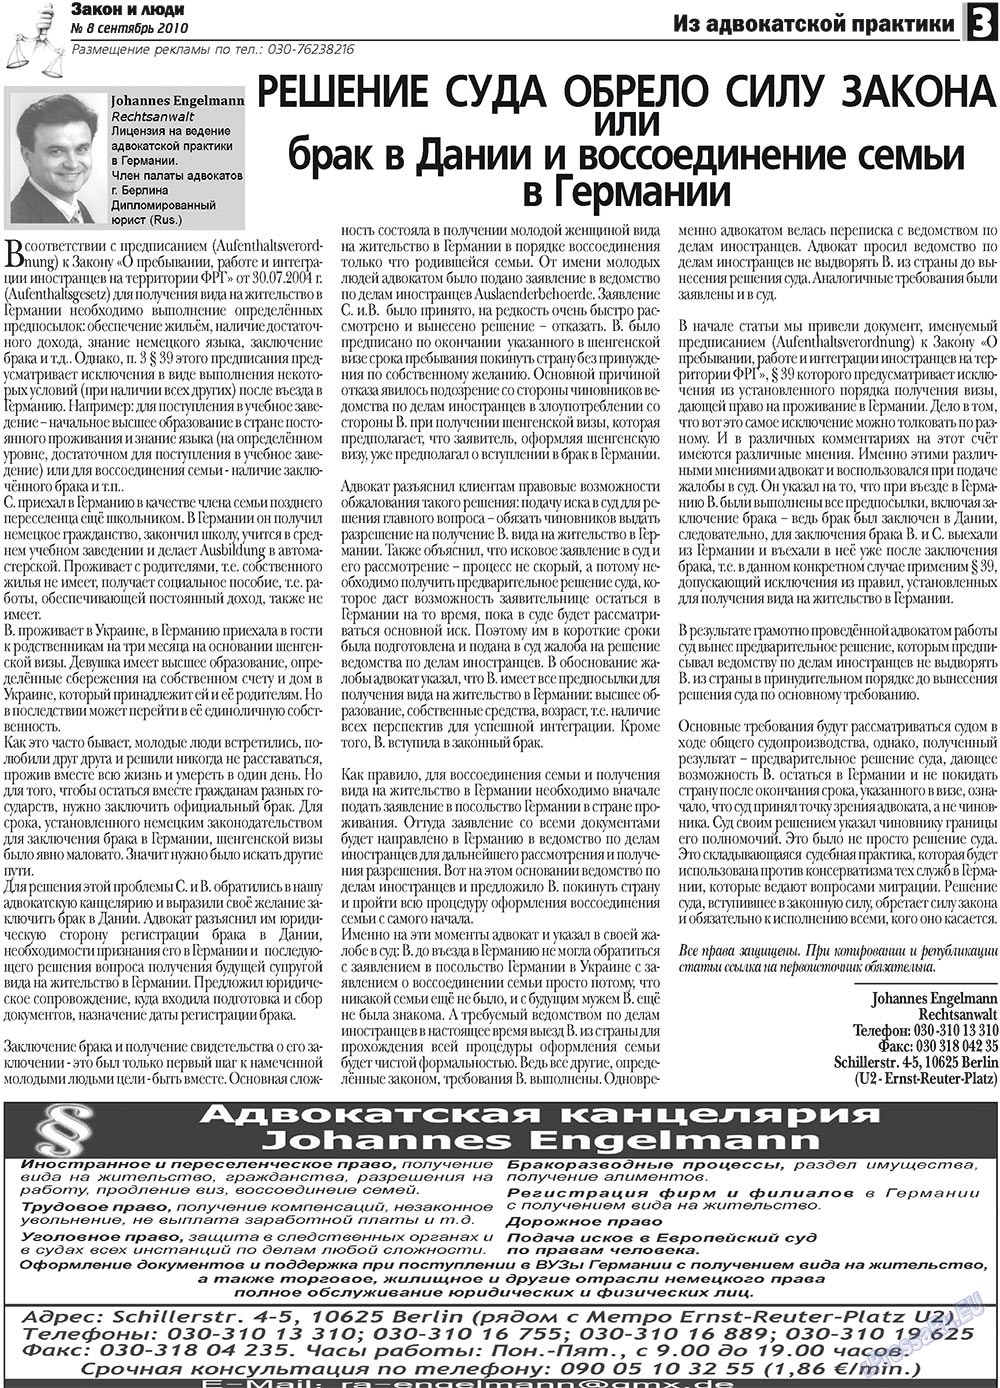 Закон и люди, газета. 2010 №8 стр.3